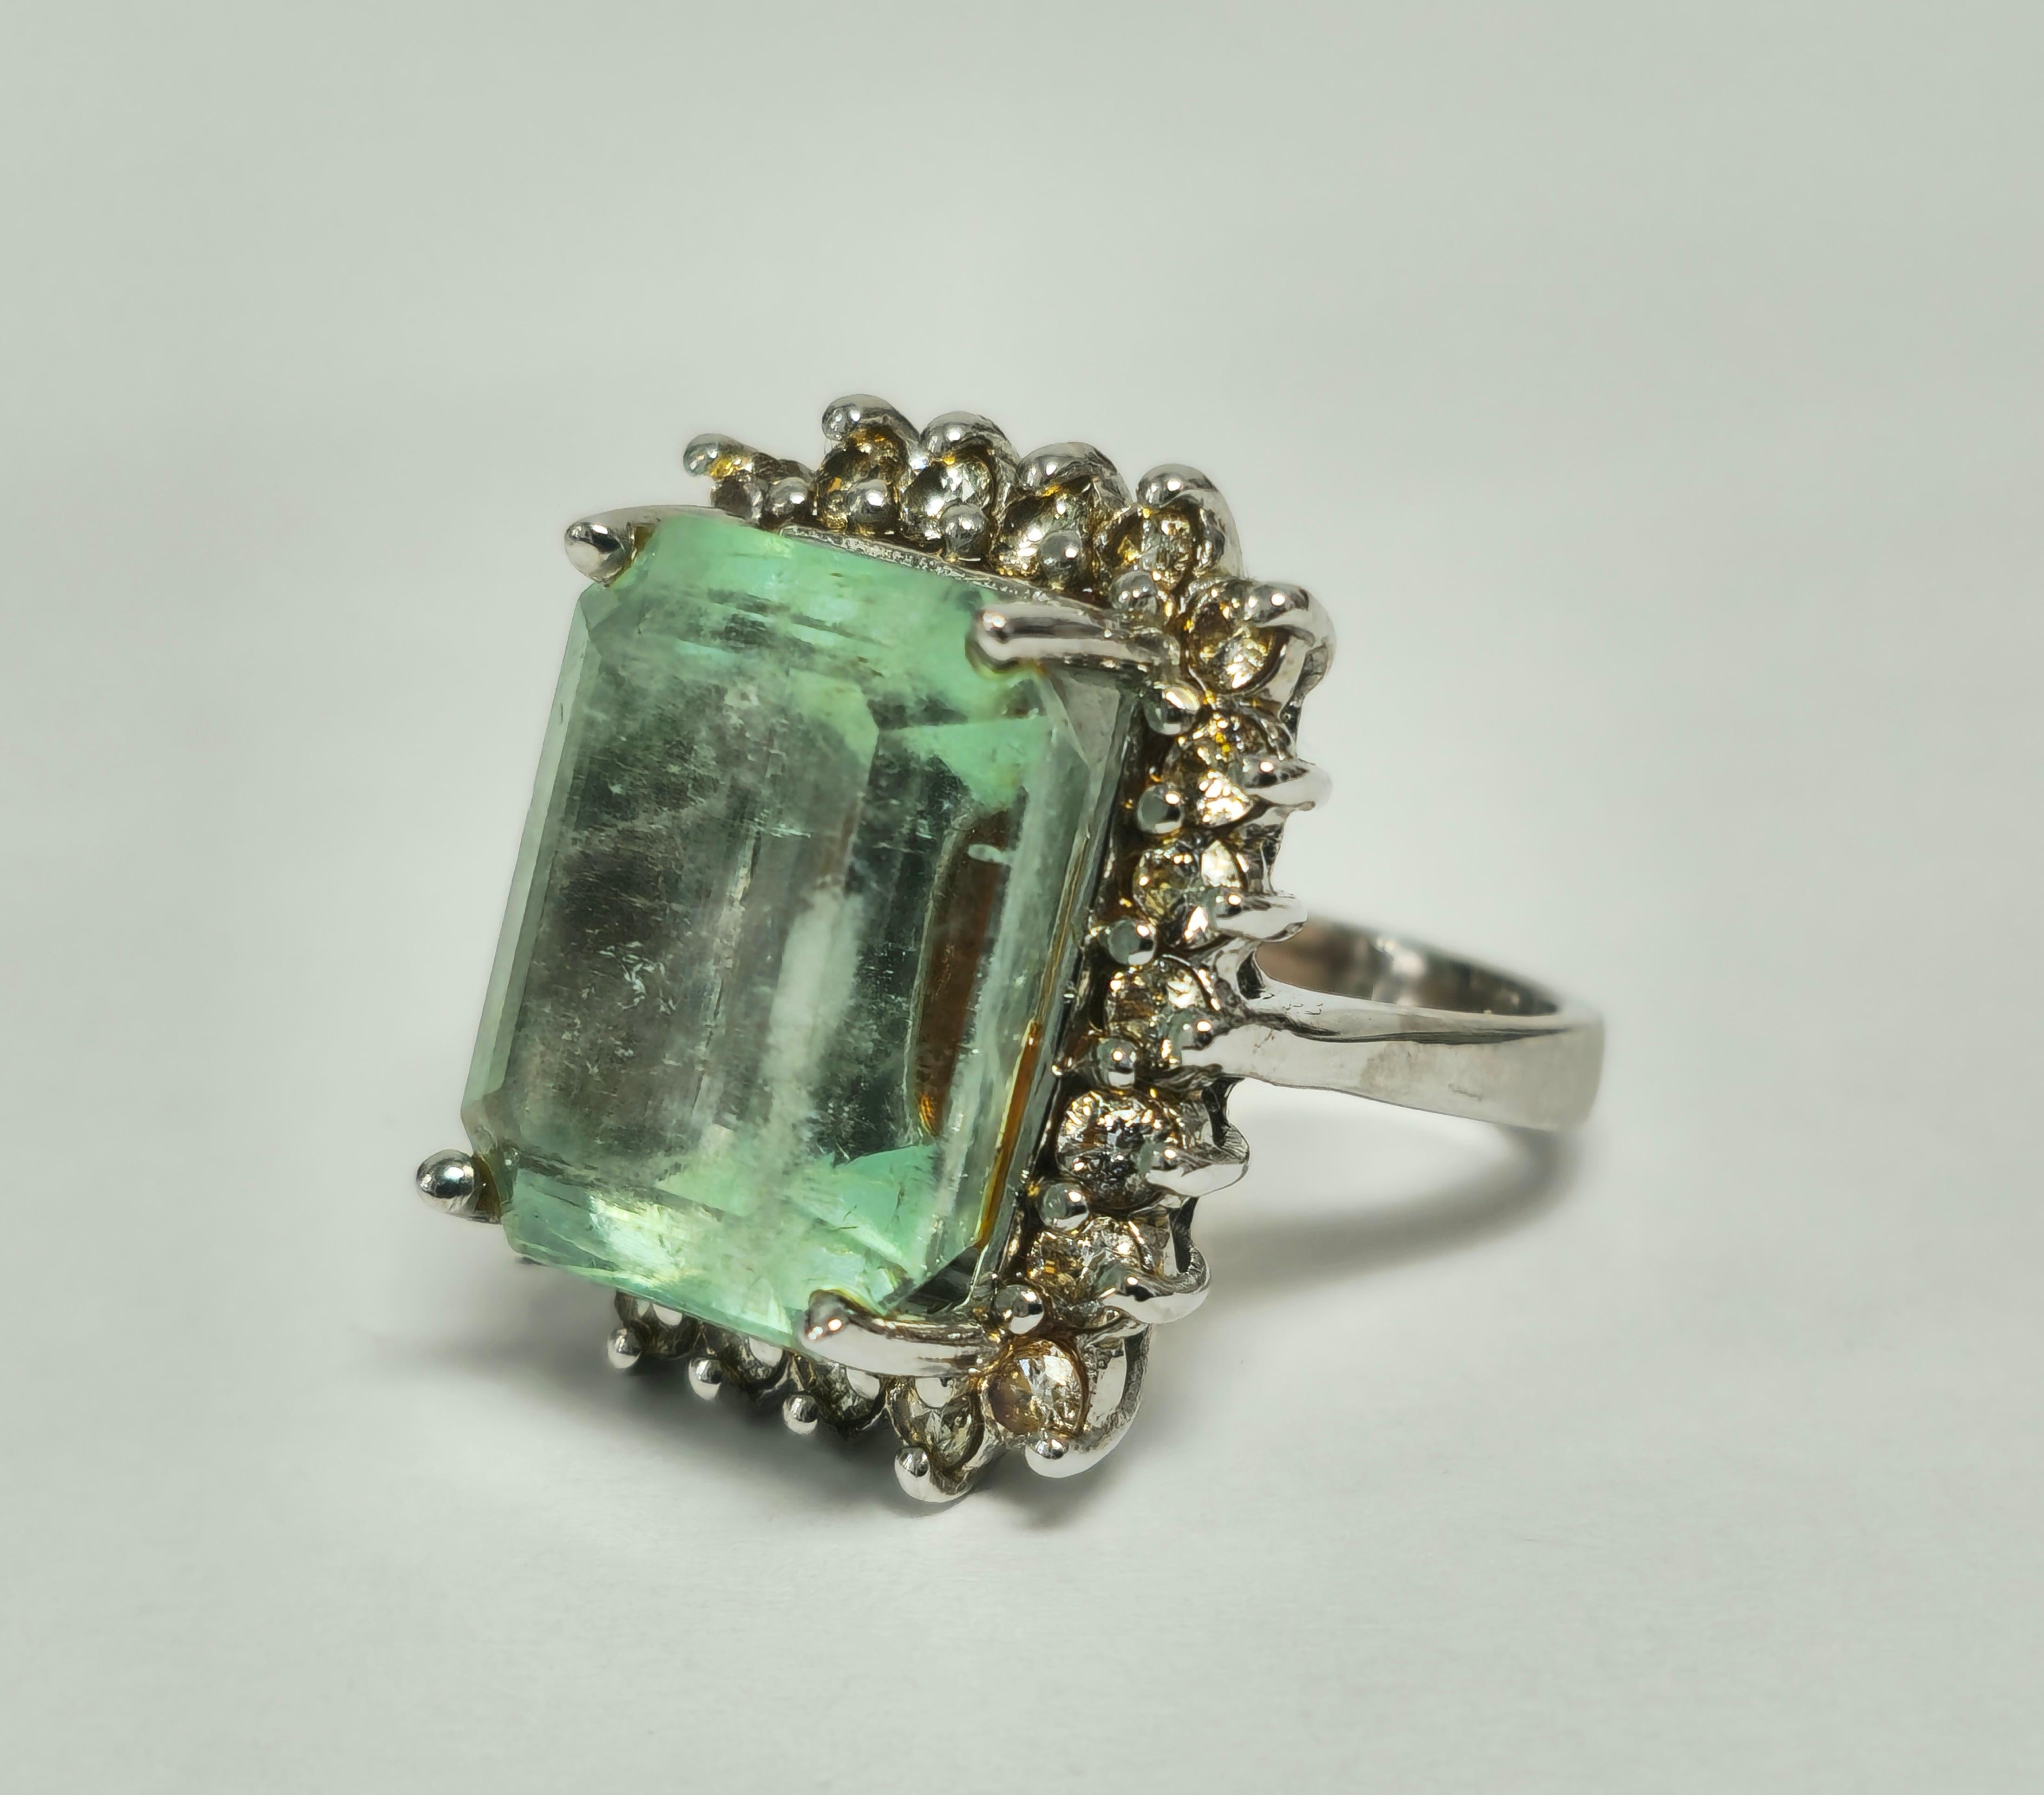 Erhöhen Sie Ihren Stil mit unserem Contemporary Emerald Ring für Damen, der mit einem atemberaubenden kolumbianischen Smaragd in glänzendem Weißgold besetzt ist. Dieses seltene und einzigartige Schmuckstück ist mit schillernden runden Diamanten im